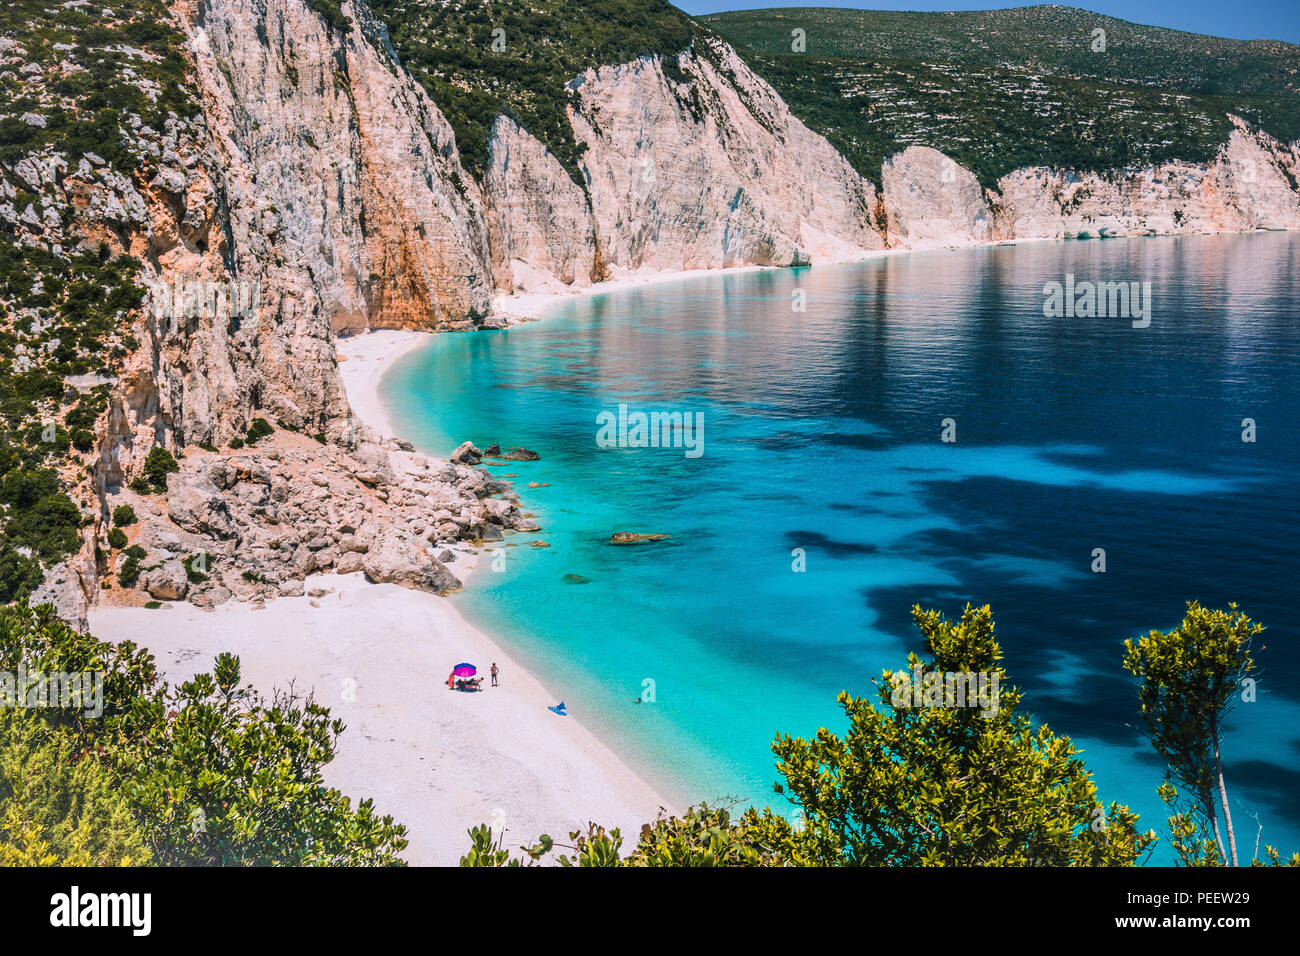 Hy Lạp: Nếu bạn đang tìm kiếm một điểm đến tuyệt vời để khám phá và thư giãn, Hy Lạp là sự lựa chọn hoàn hảo. Hãy khám phá bộ sưu tập hình ảnh tuyệt đẹp của đất nước này để trải nghiệm cảm giác thư giãn và đắm chìm trong thiên nhiên tuyệt đẹp của Hy Lạp.